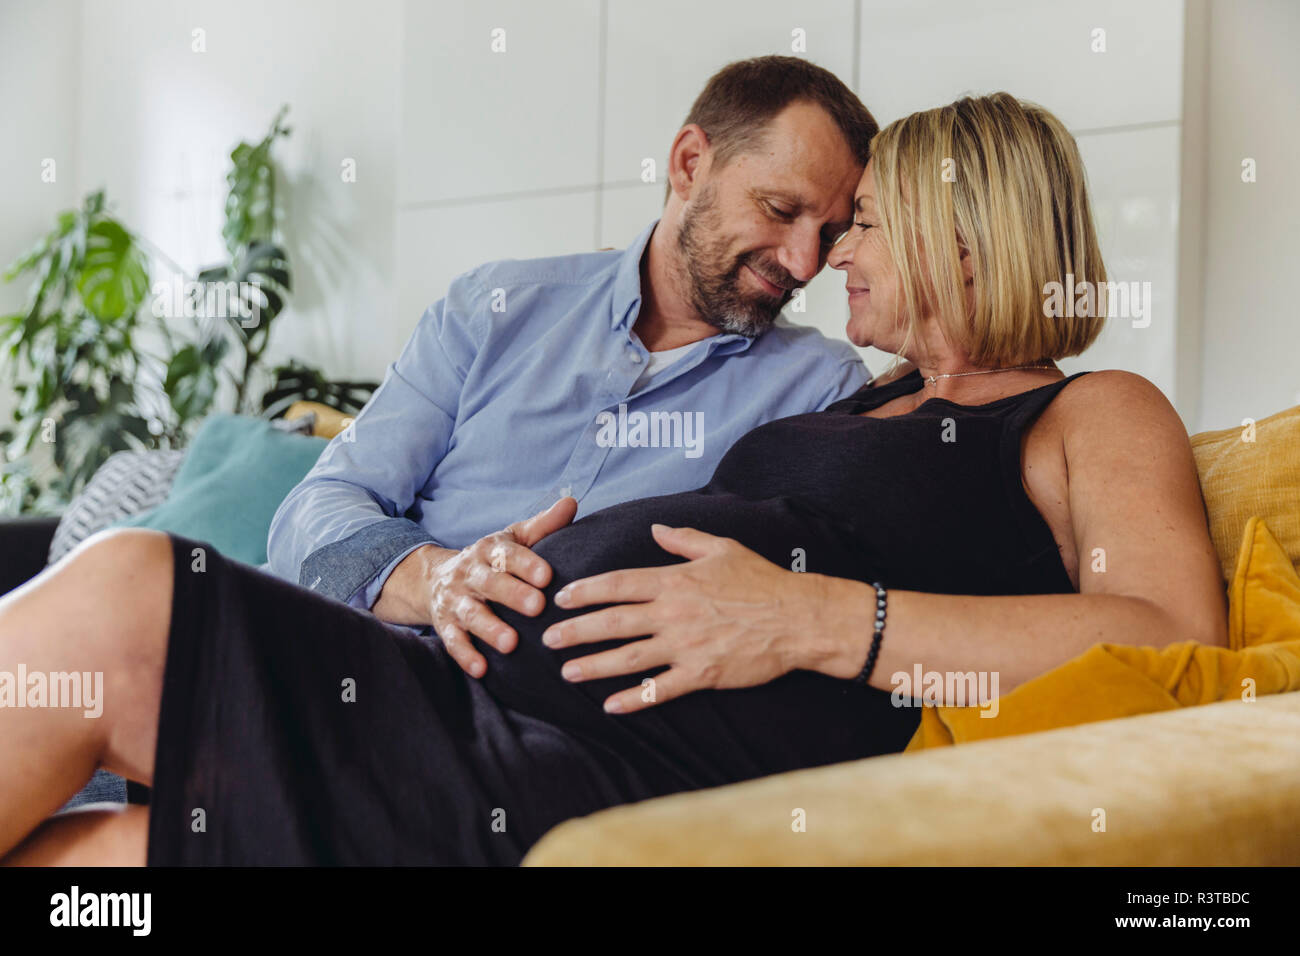 Reifer Mann und seine schwangere reife Frau sitzt auf der Couch ihren Bauch berühren. Stockfoto